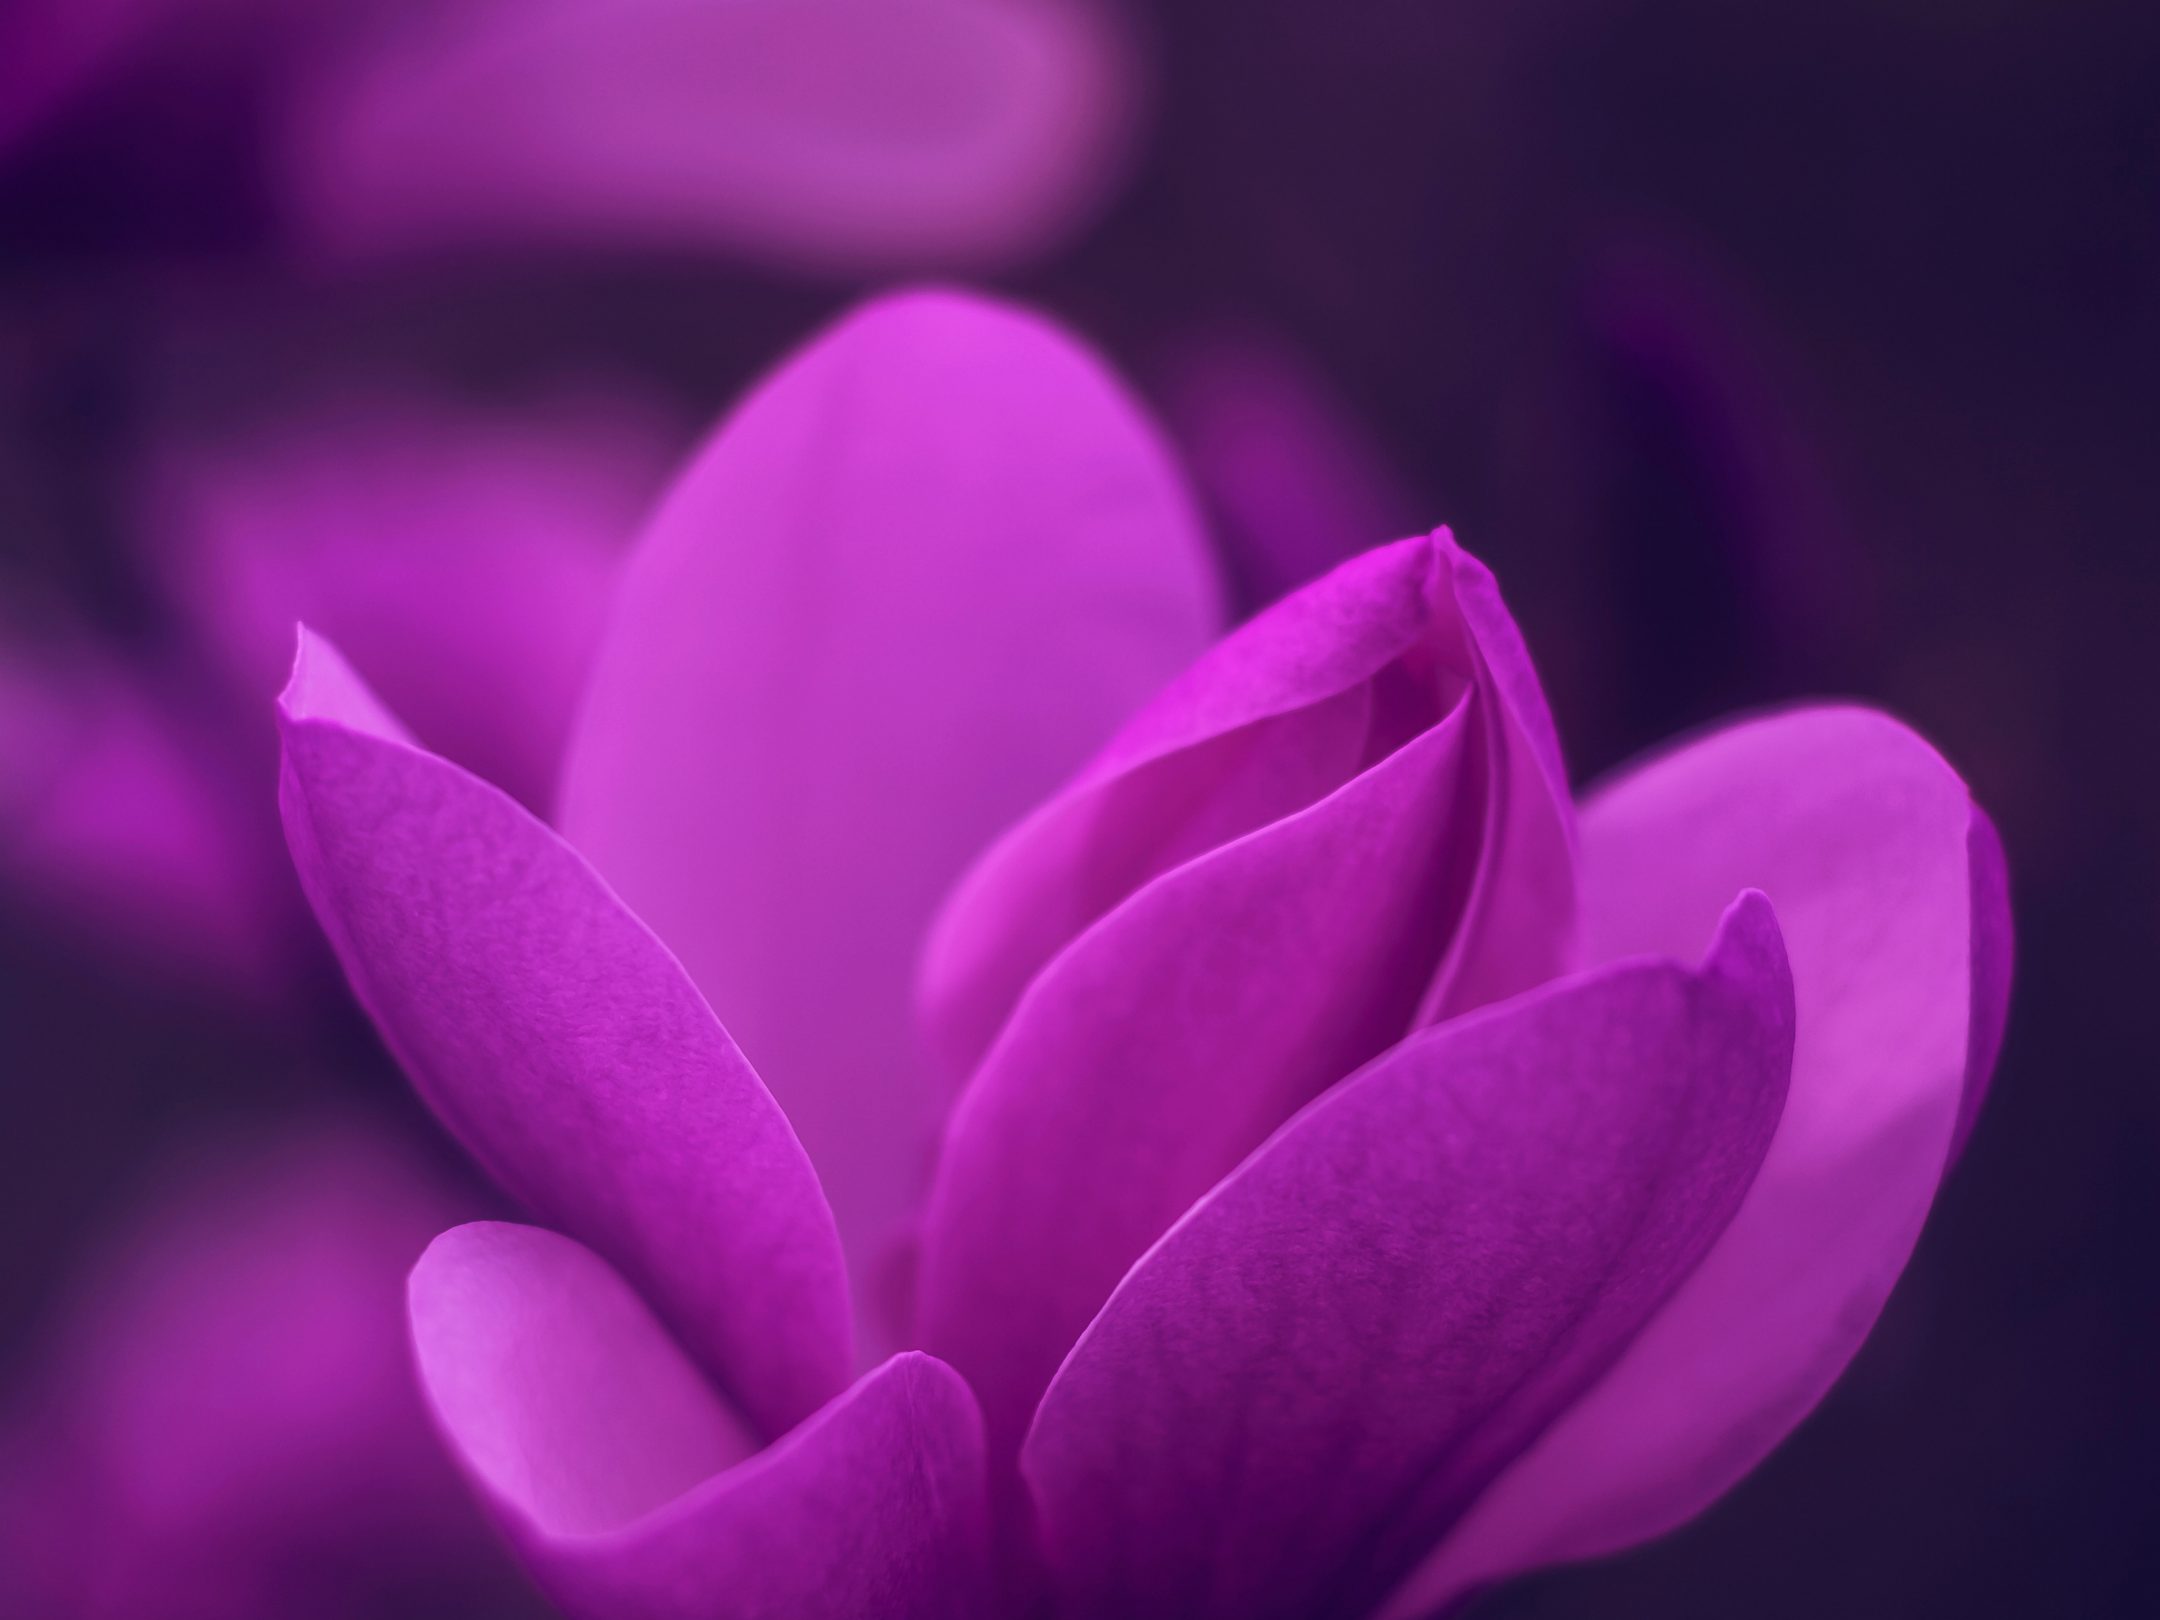 2160x1620 iPad wallpaper 4k Purple Bloom Blossom Petaled Flower iPad Wallpaper 2160x1620 pixels resolution